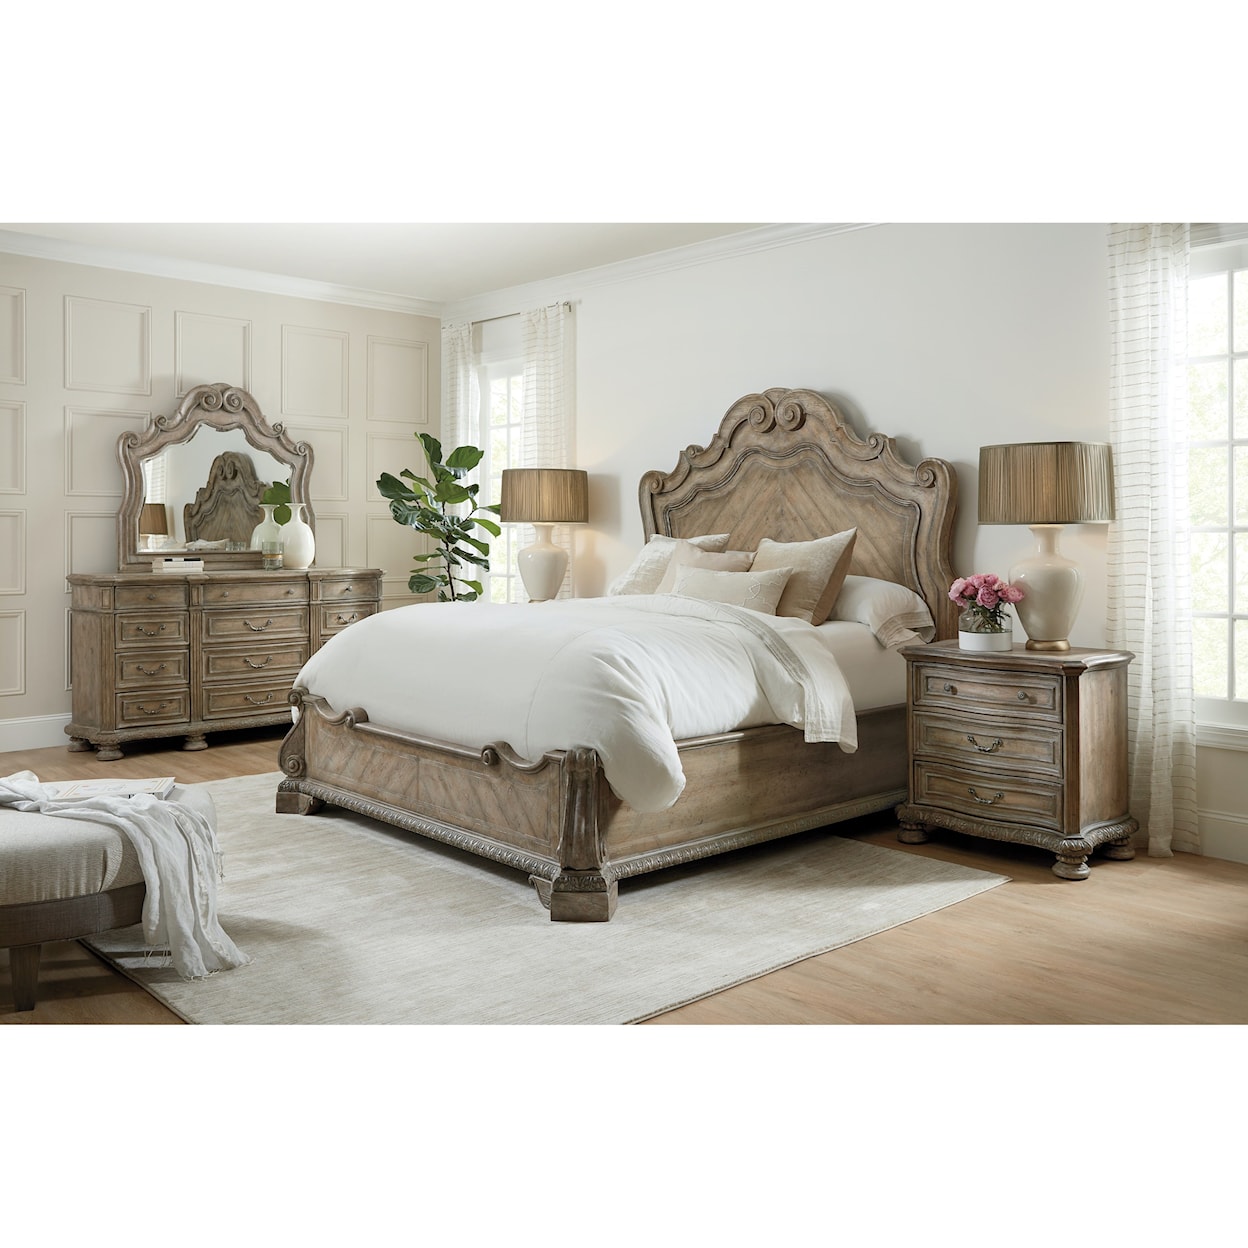 Hooker Furniture Castella King Bedroom Group